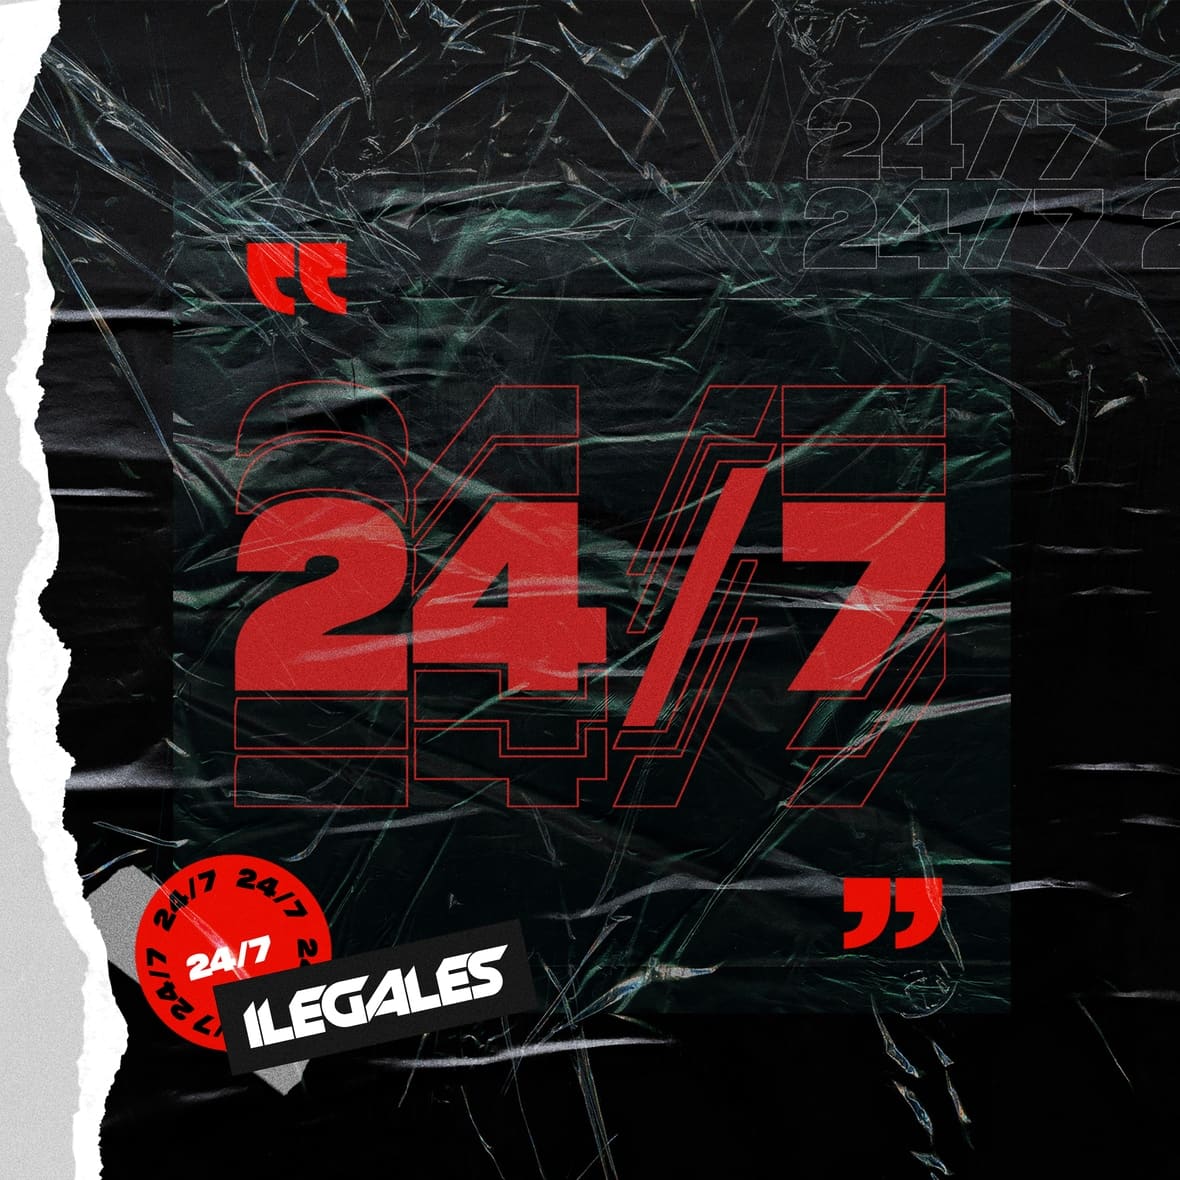 "24/7" la nueva producción de Ilegales